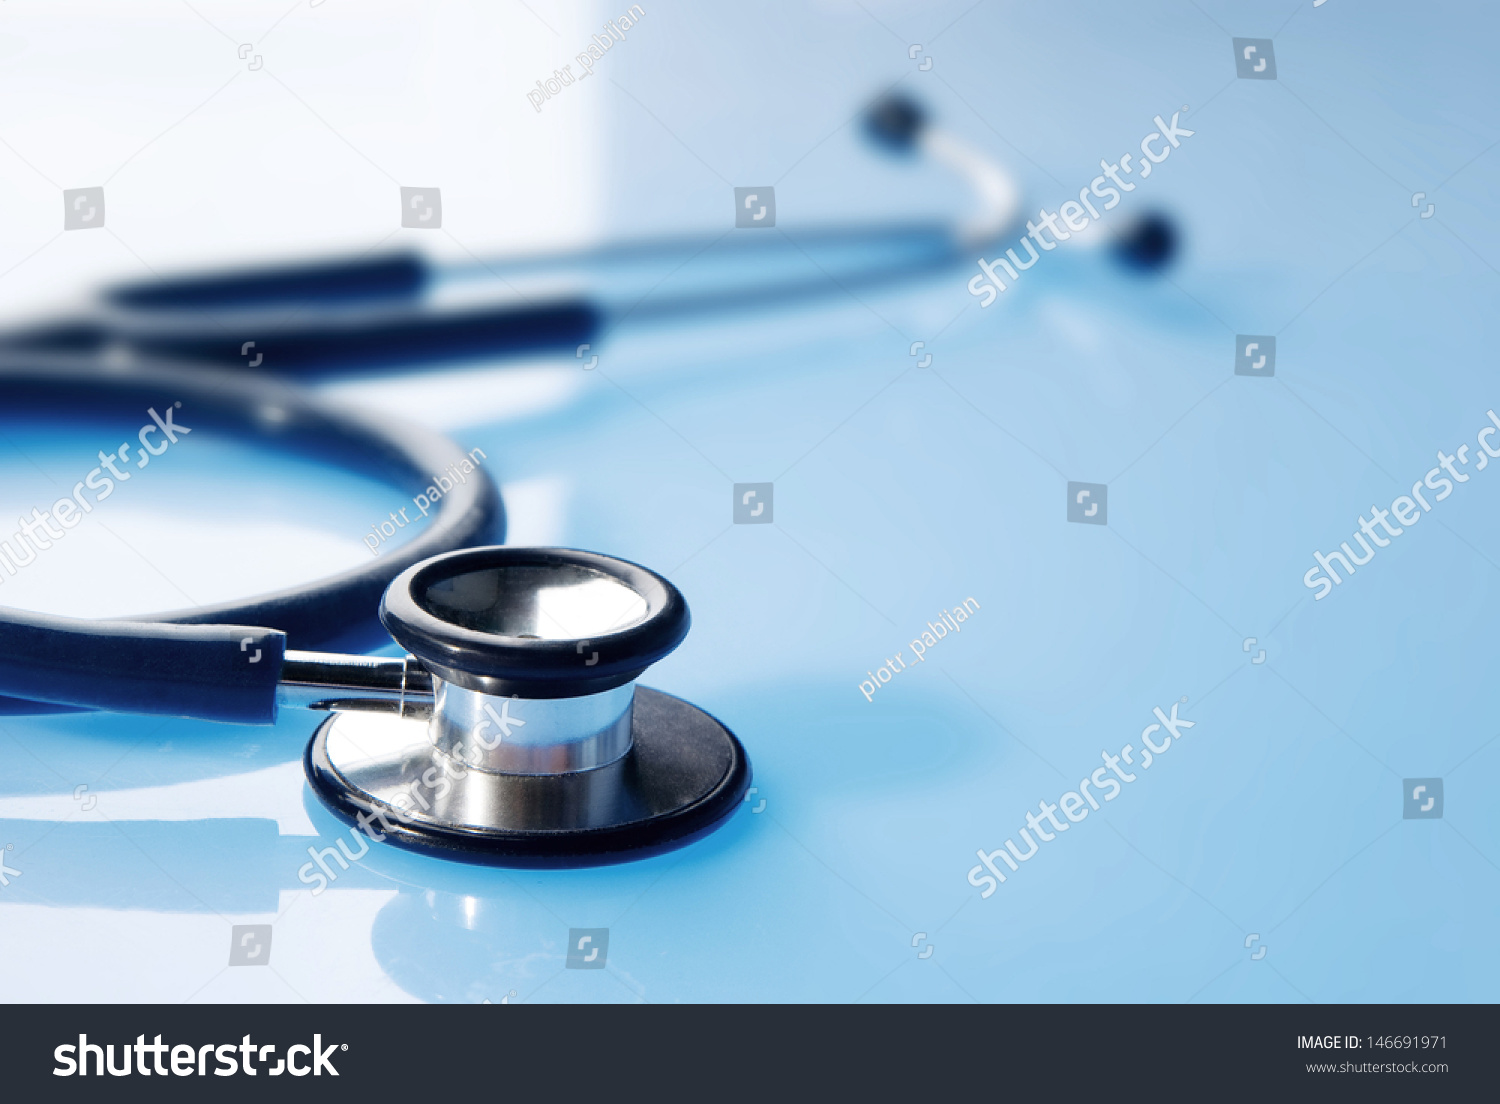 Stethoscope On Blue Reflective Background Stock Photo